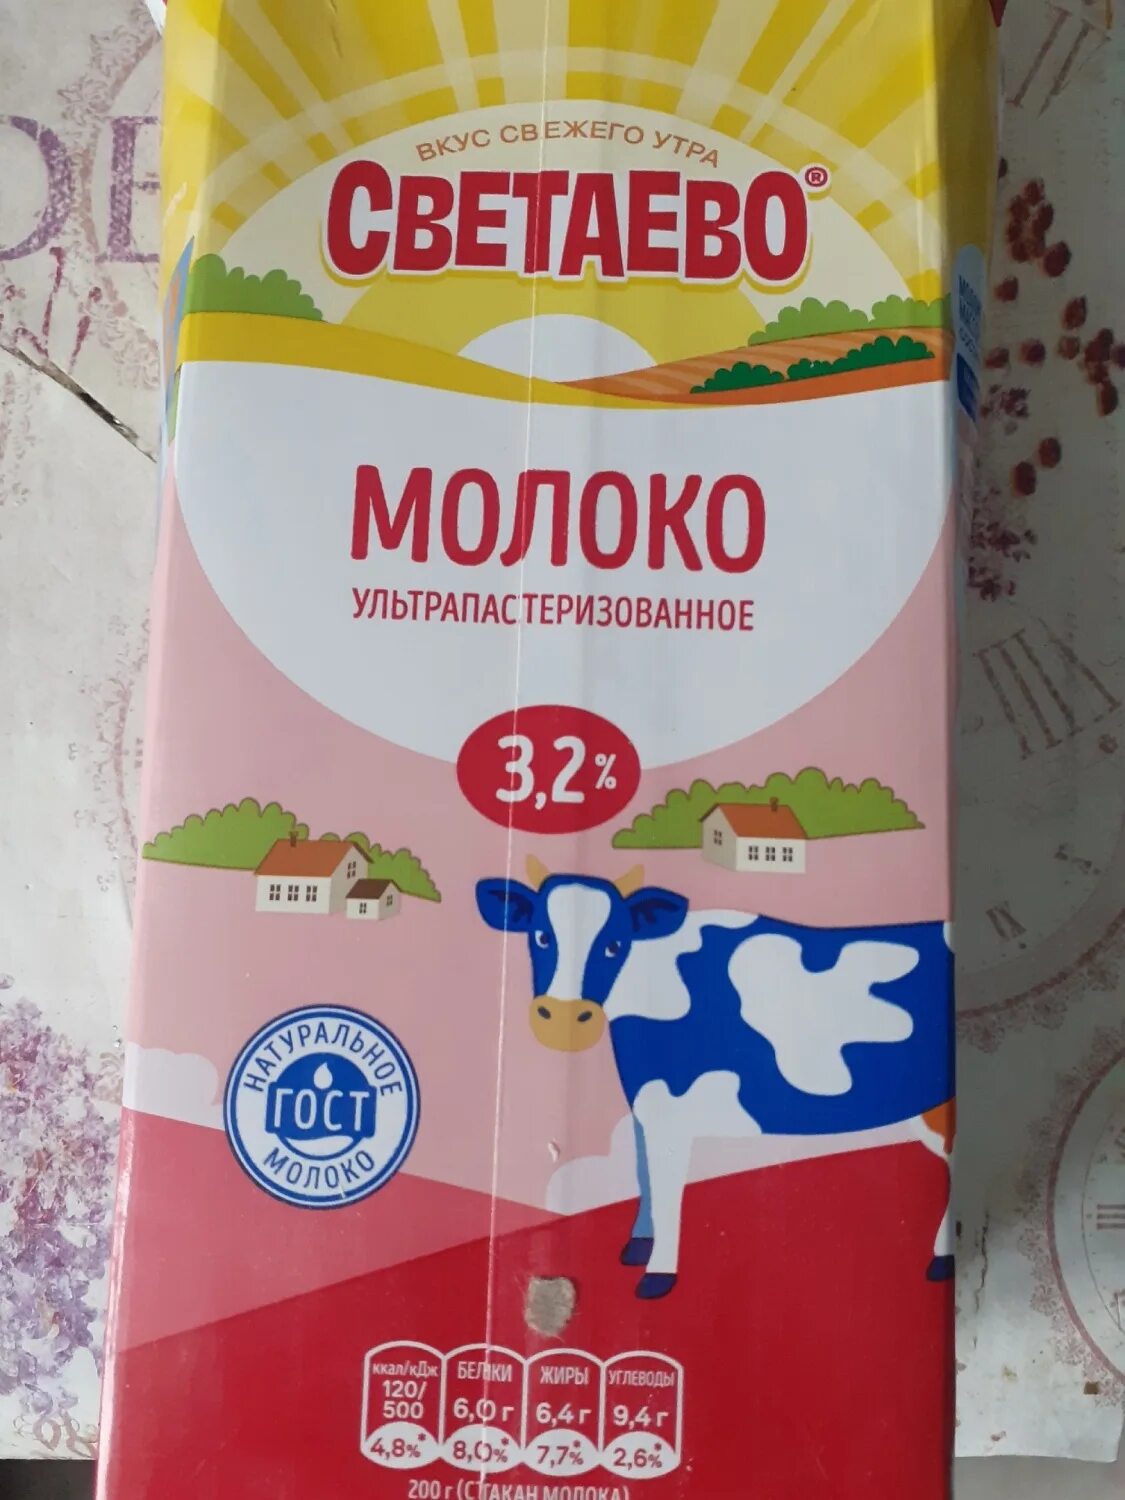 Светаево продукты. Ультрапастеризованное молоко. Молоко 3.2. Молоко светаево. Продукция светаево молочная продукция.